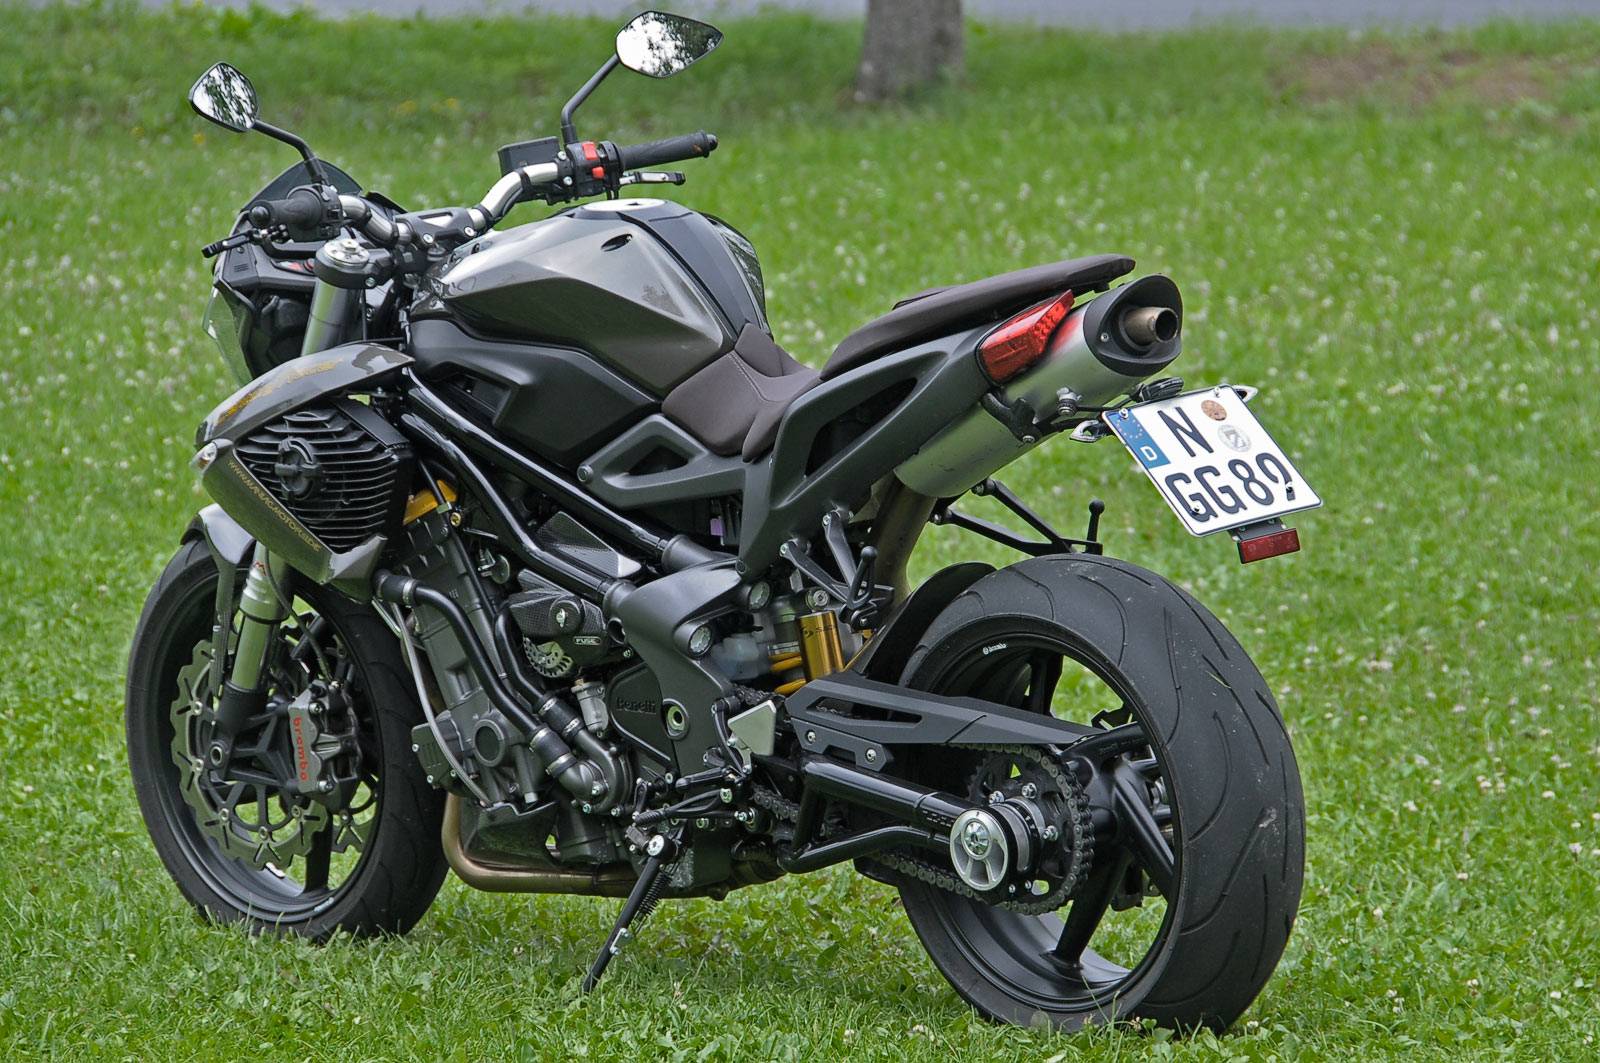 Мотоцикл benelli tnt 300 2020 фото, характеристики, обзор, сравнение на базамото